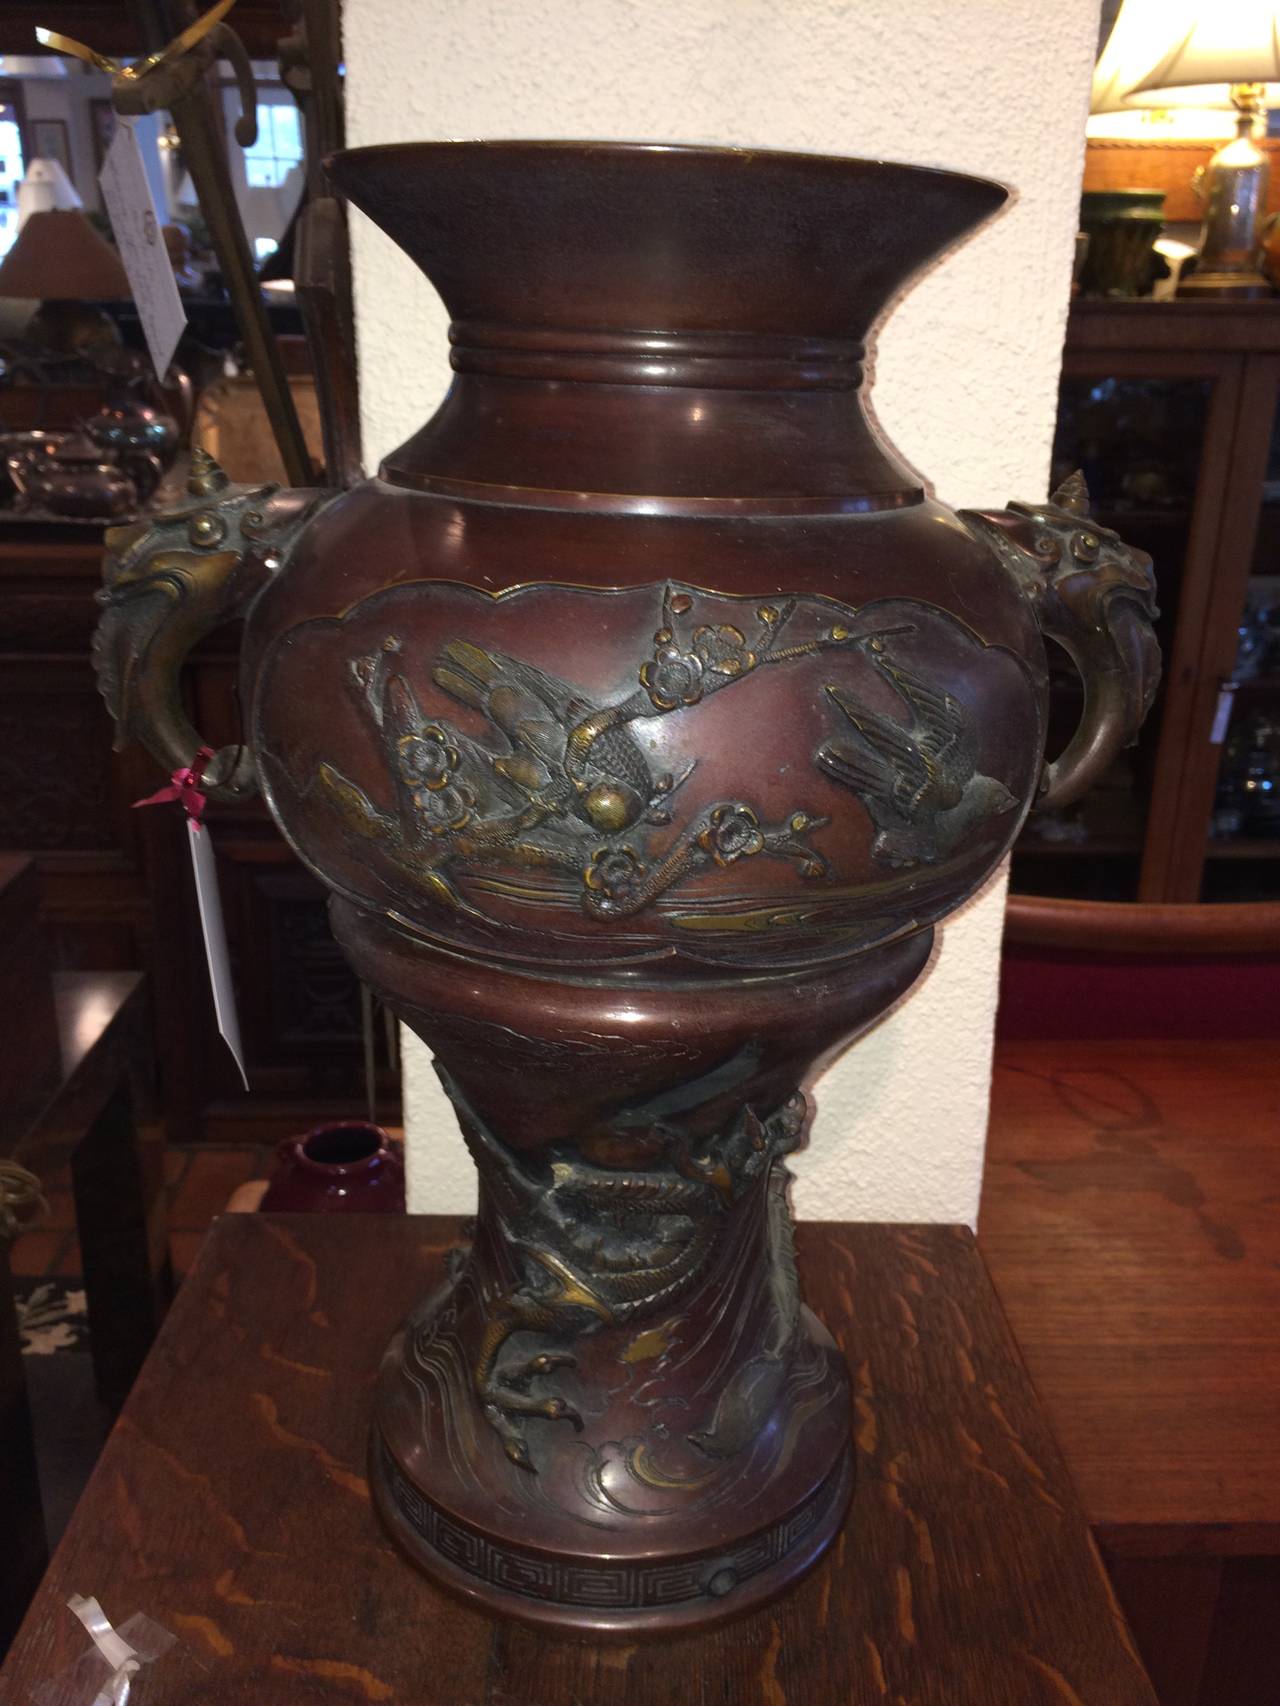 Grande urne à deux anses en bronze de la période Meiji avec décoration. La décoration consiste en des oiseaux en relief, des branches avec des fleurs de cerisier et un dragon. Belle patine pour ce magnifique vase qui peut également être transformé